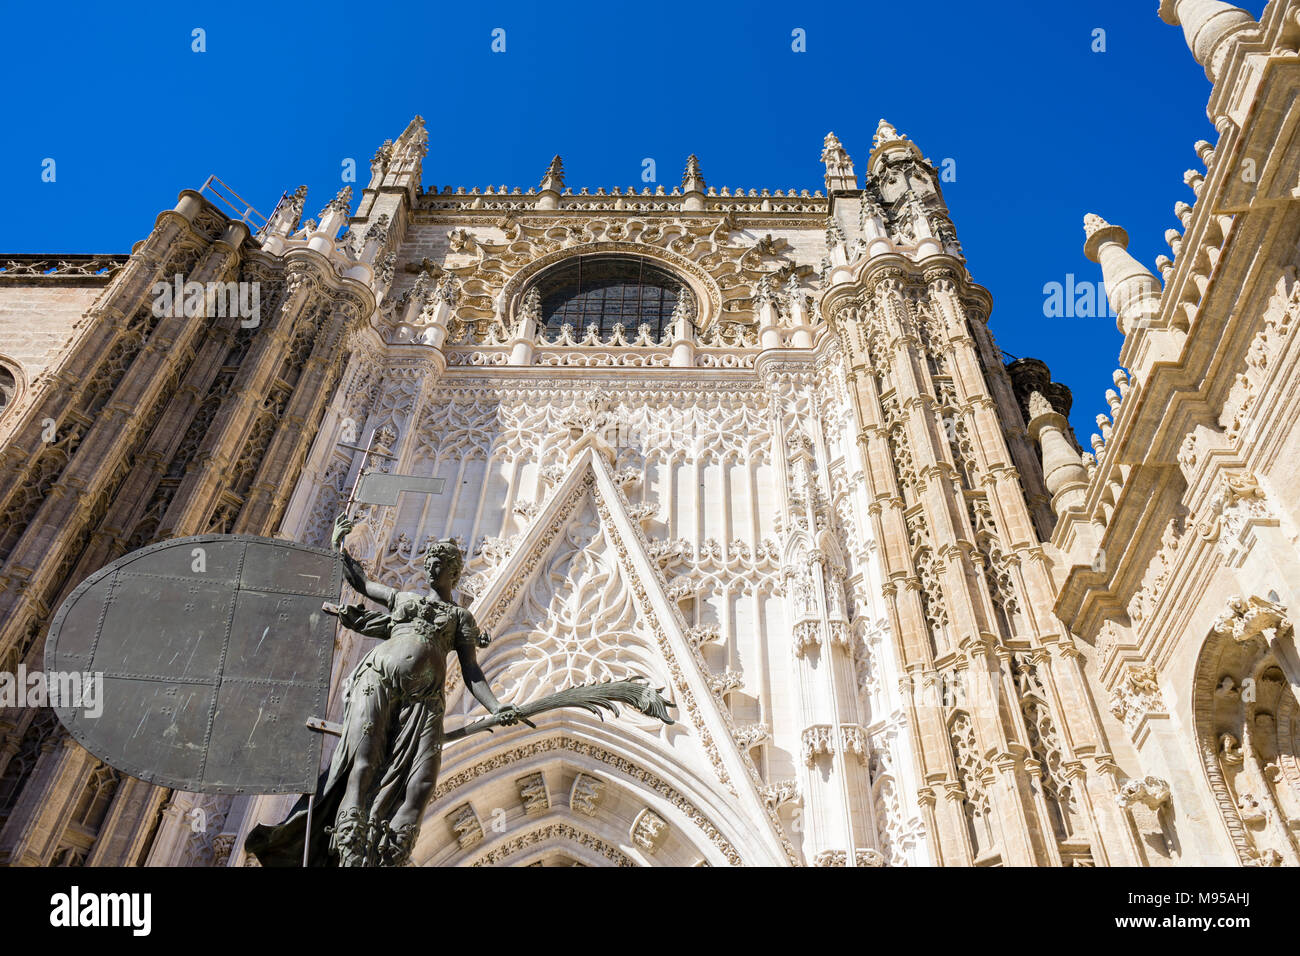 El triunfo de la fe estatua en la puerta de San Miguel, Puerta de San Miguel - una de las entradas a la Catedral de Sevilla en Sevilla, Andalucía, España Foto de stock